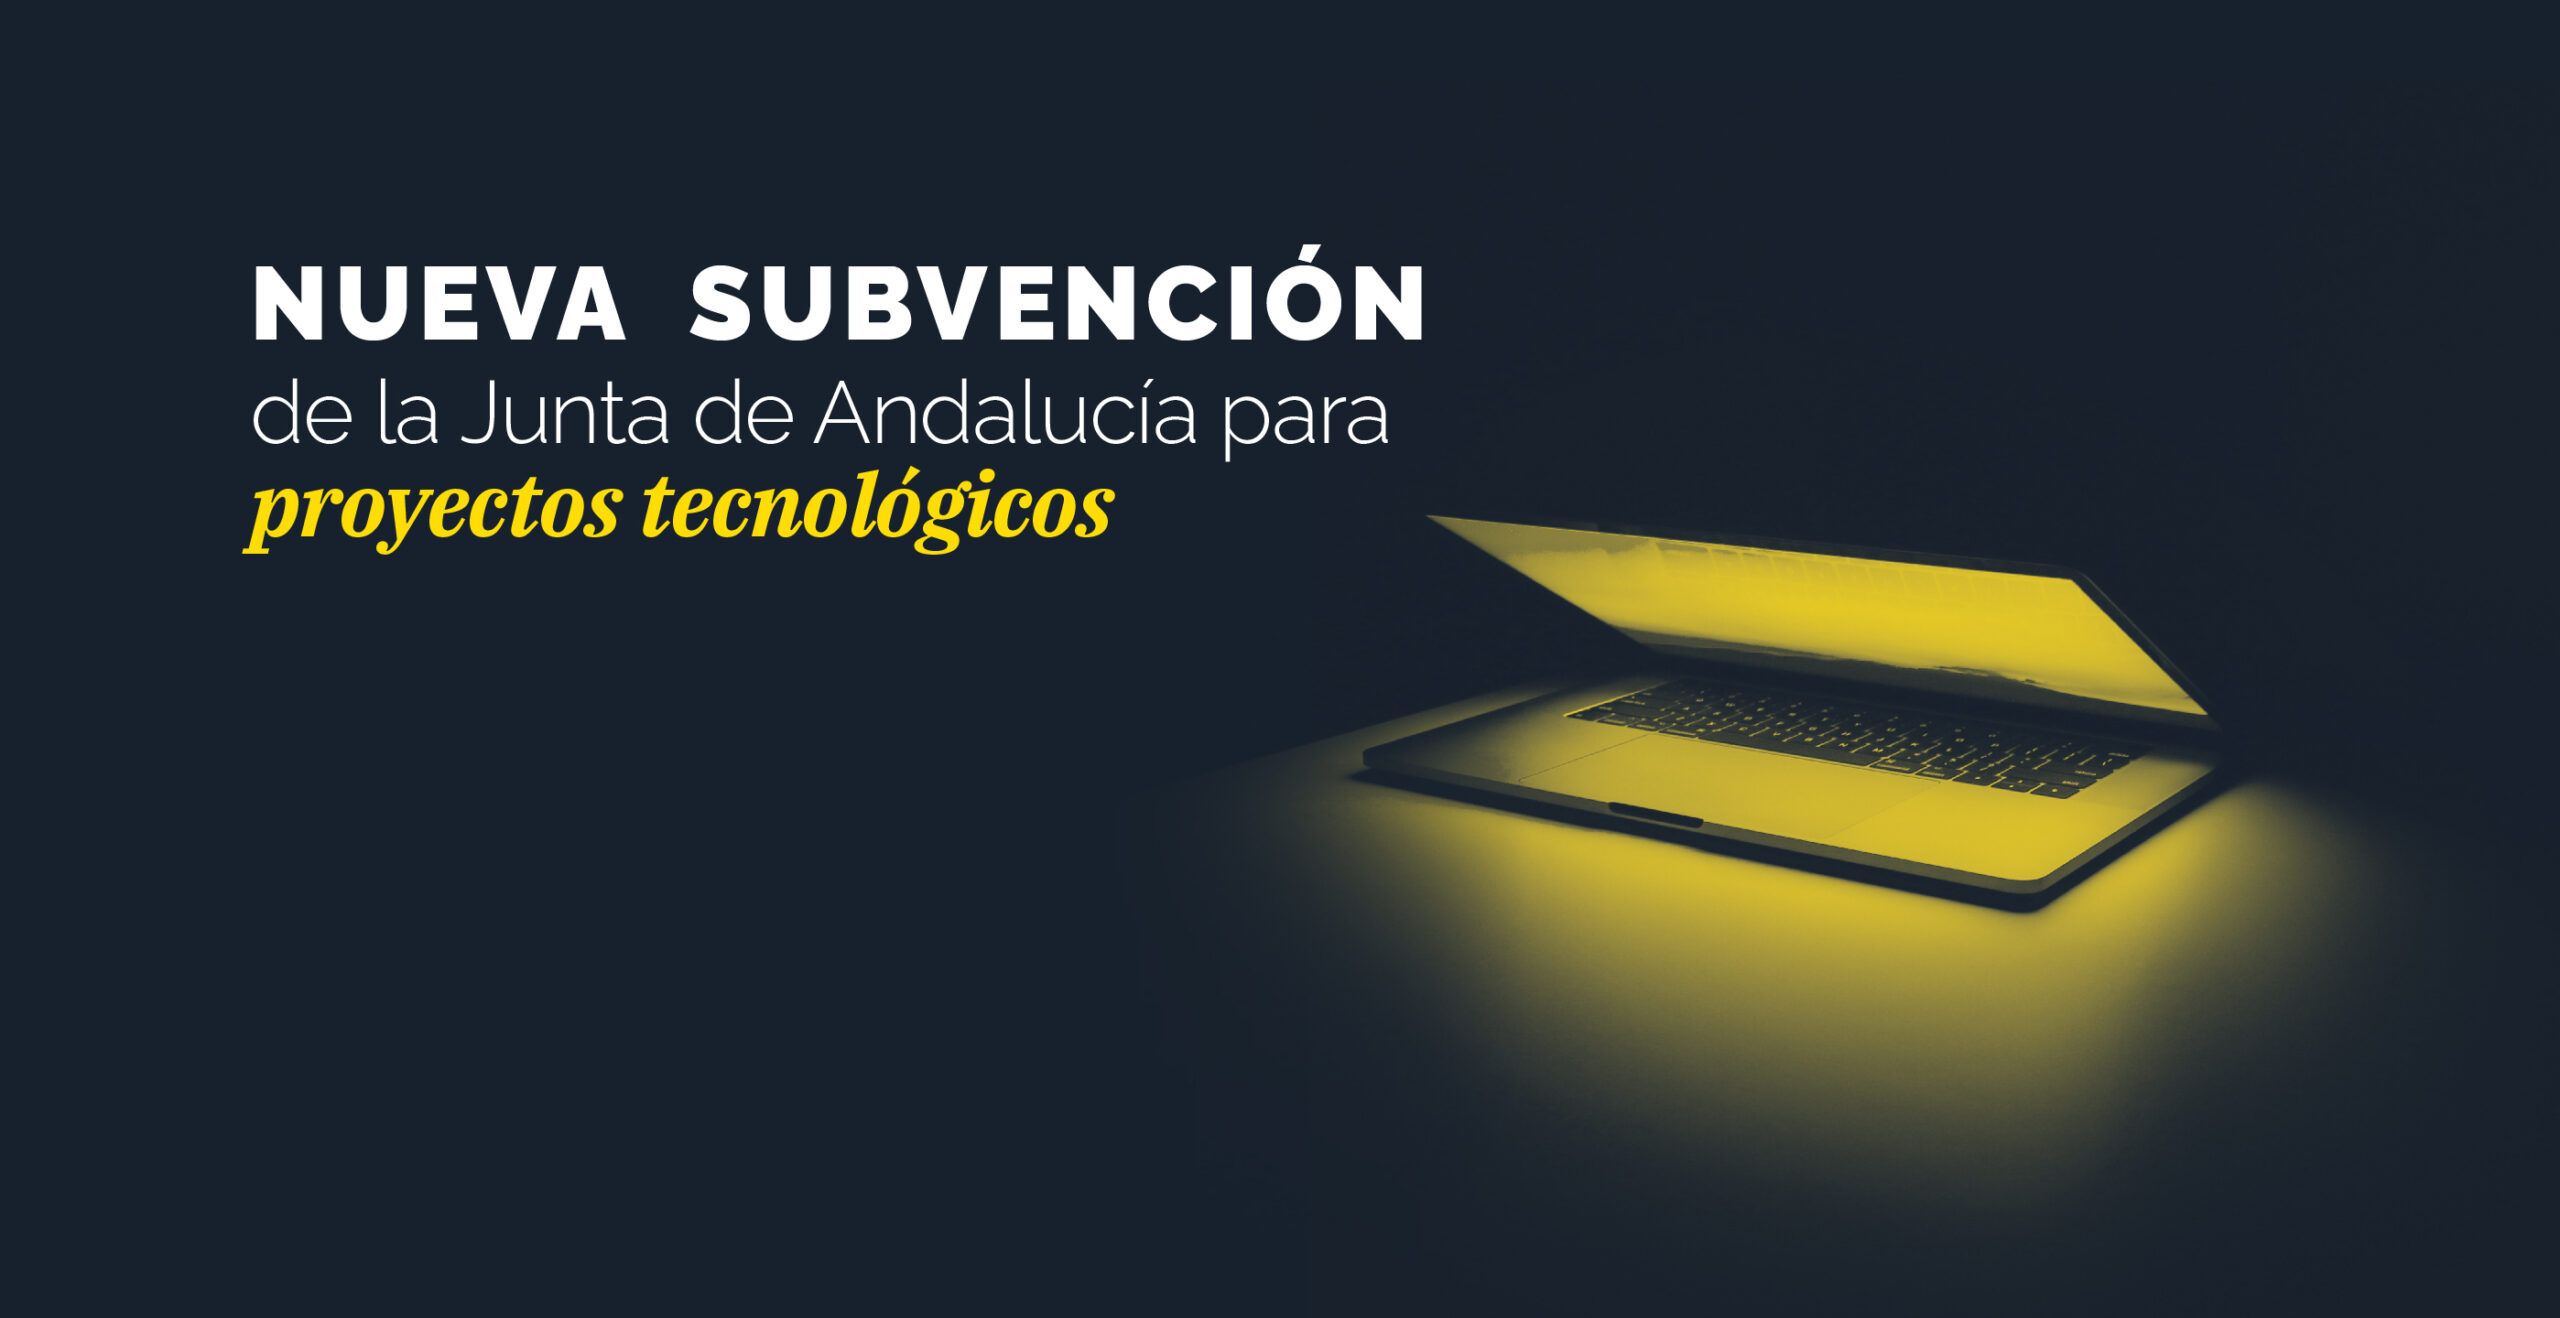 Subvención Andalucía proyectos tecnológicos